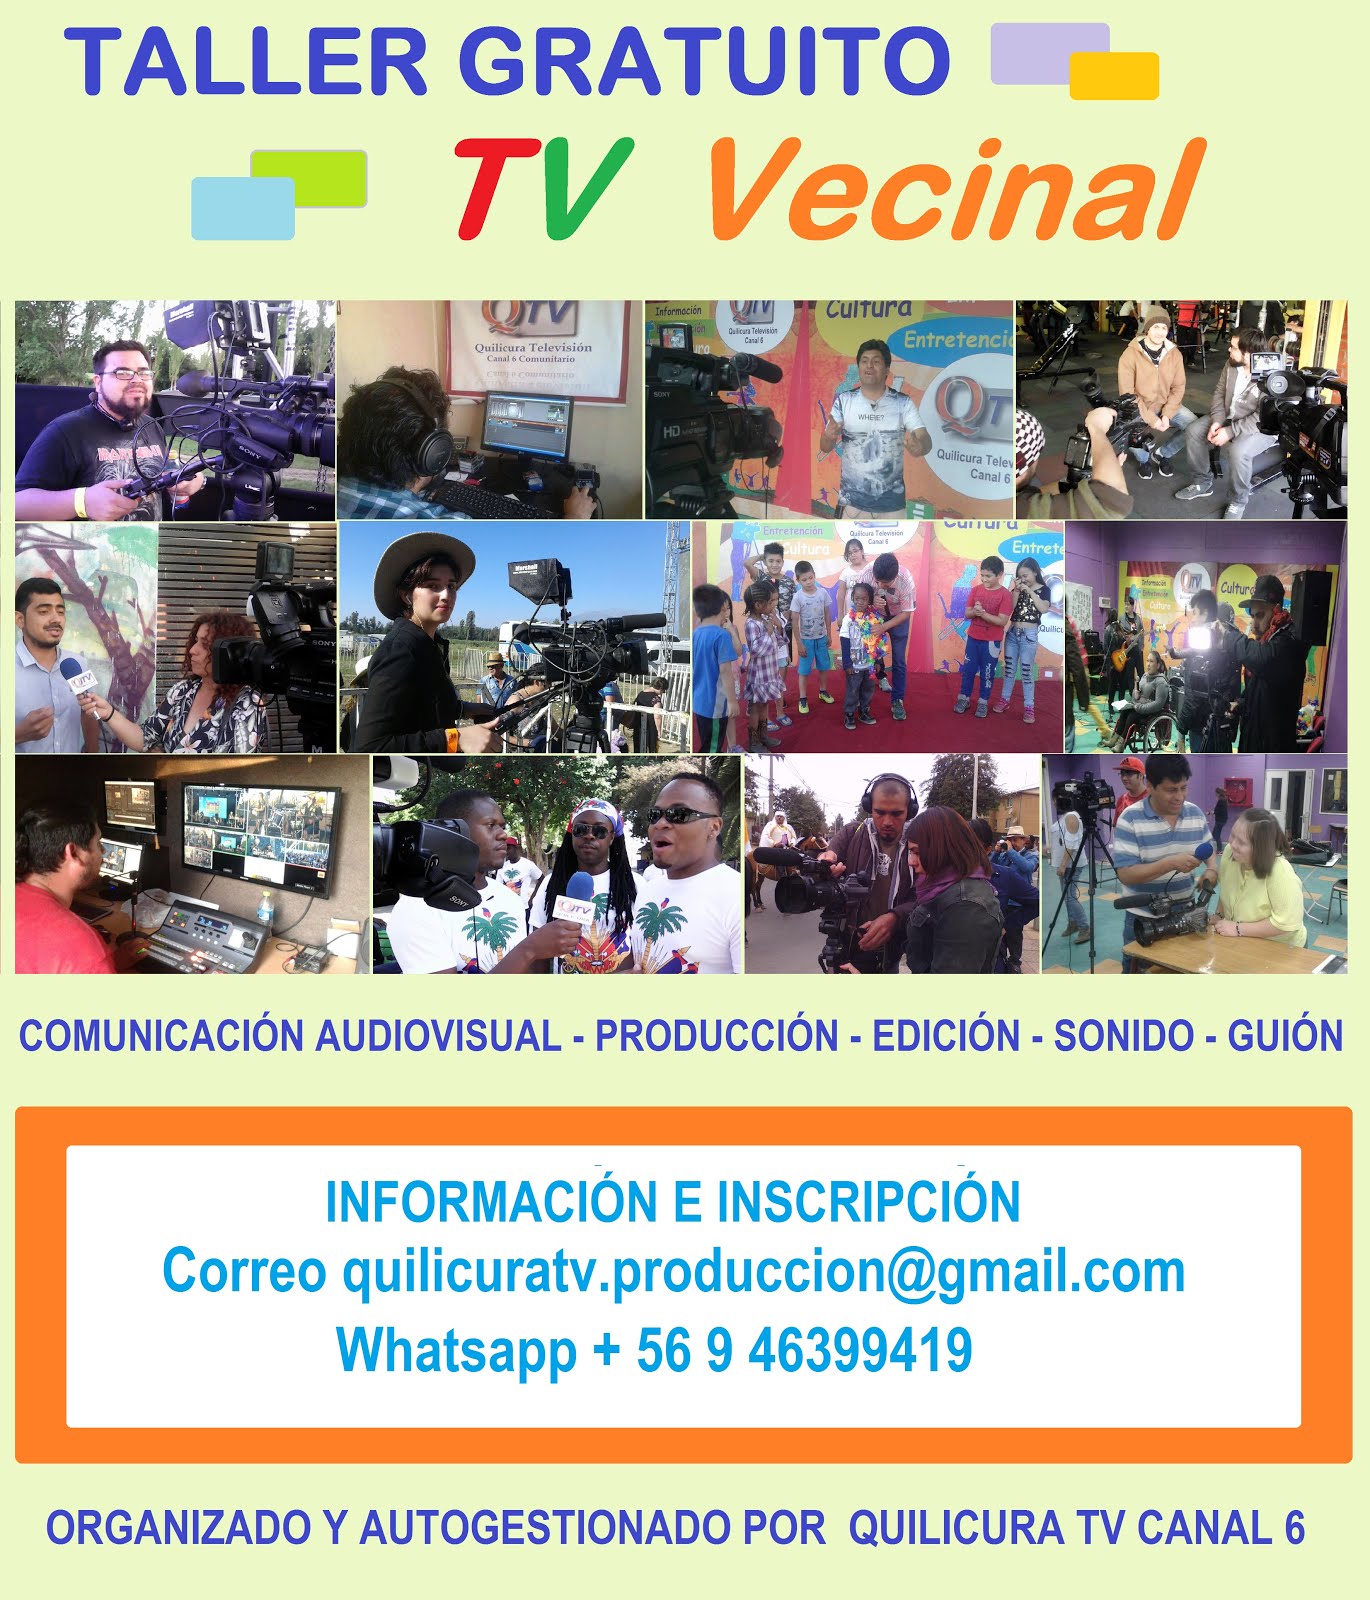 TALLER DE TV VECINAL Gratuito